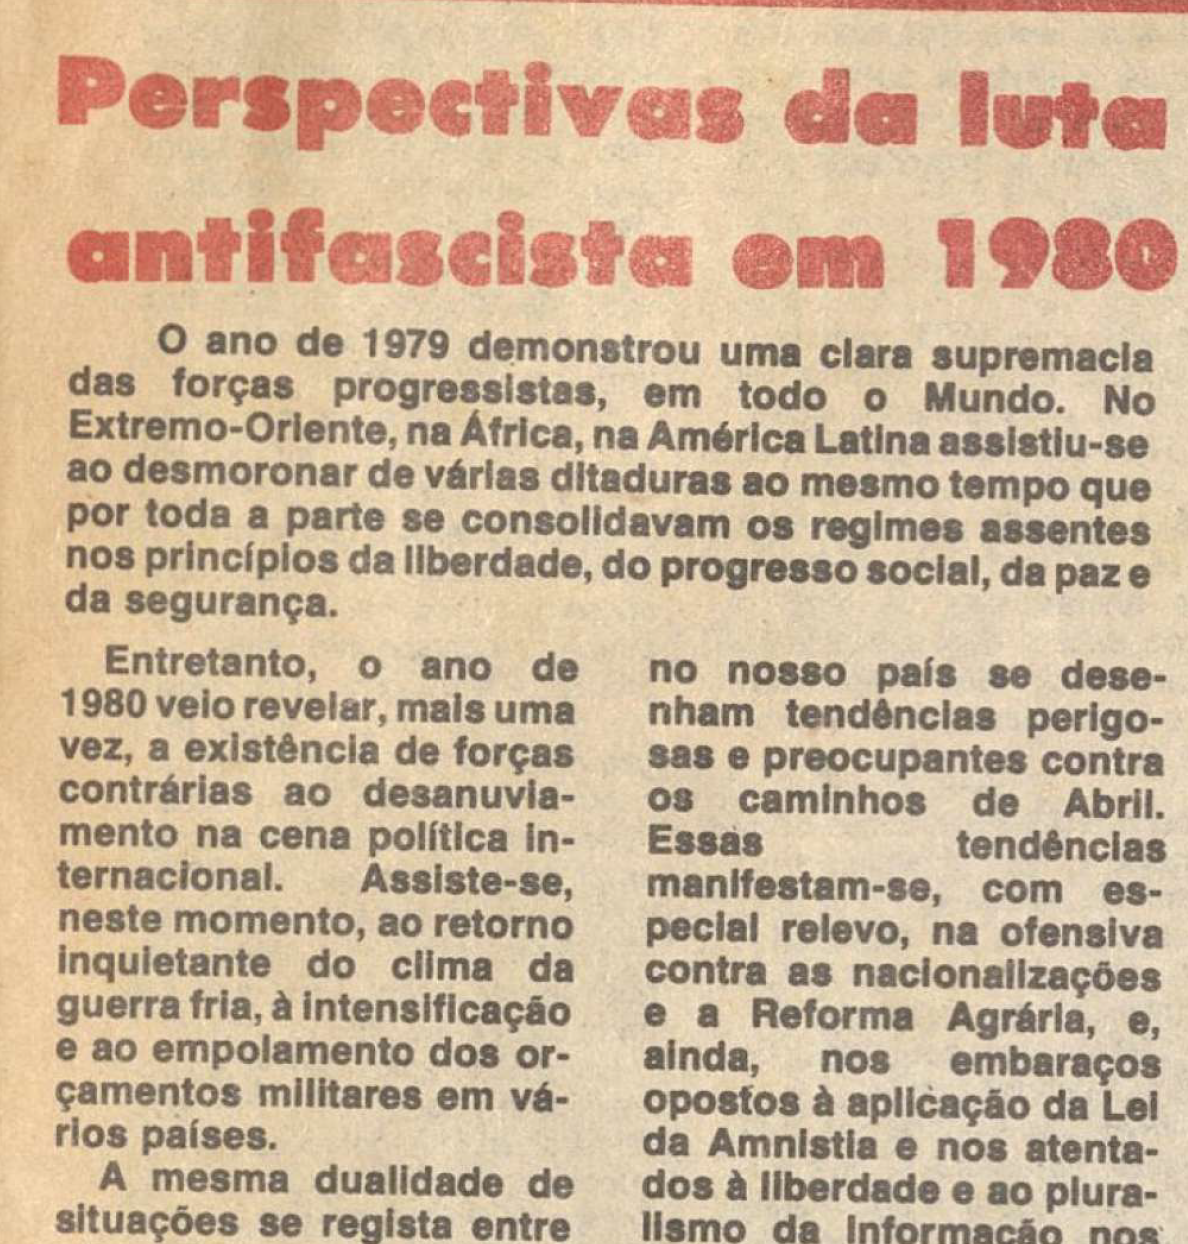 "Perspectivas da luta antifascista em 1980"